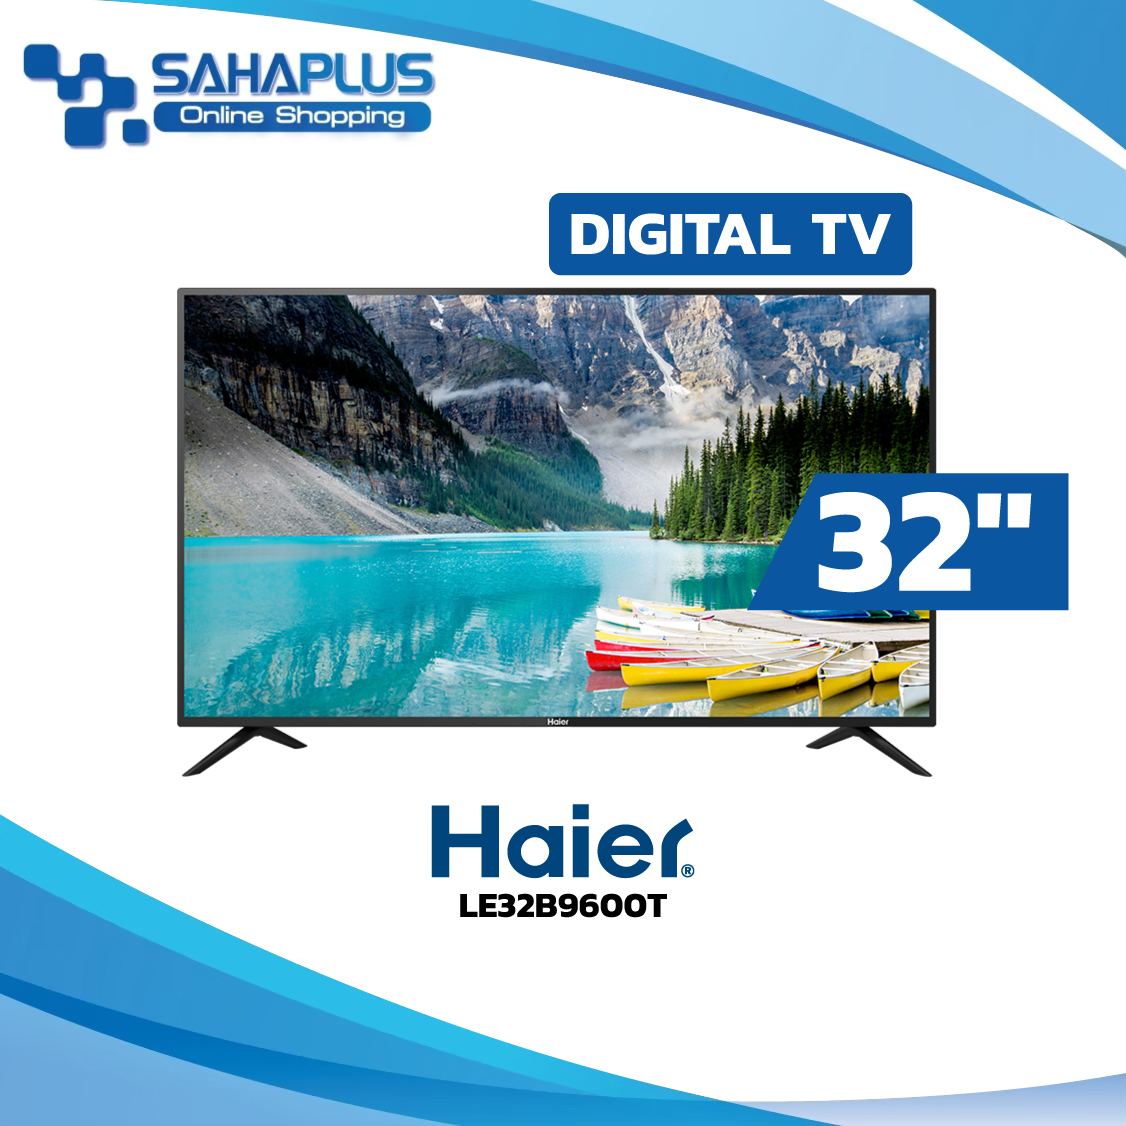 TV Digital Miracast HD 32 นิ้ว ทีวี Haier รุ่น LE32B9600T (รับประกันศูนย์ 3 ปี)